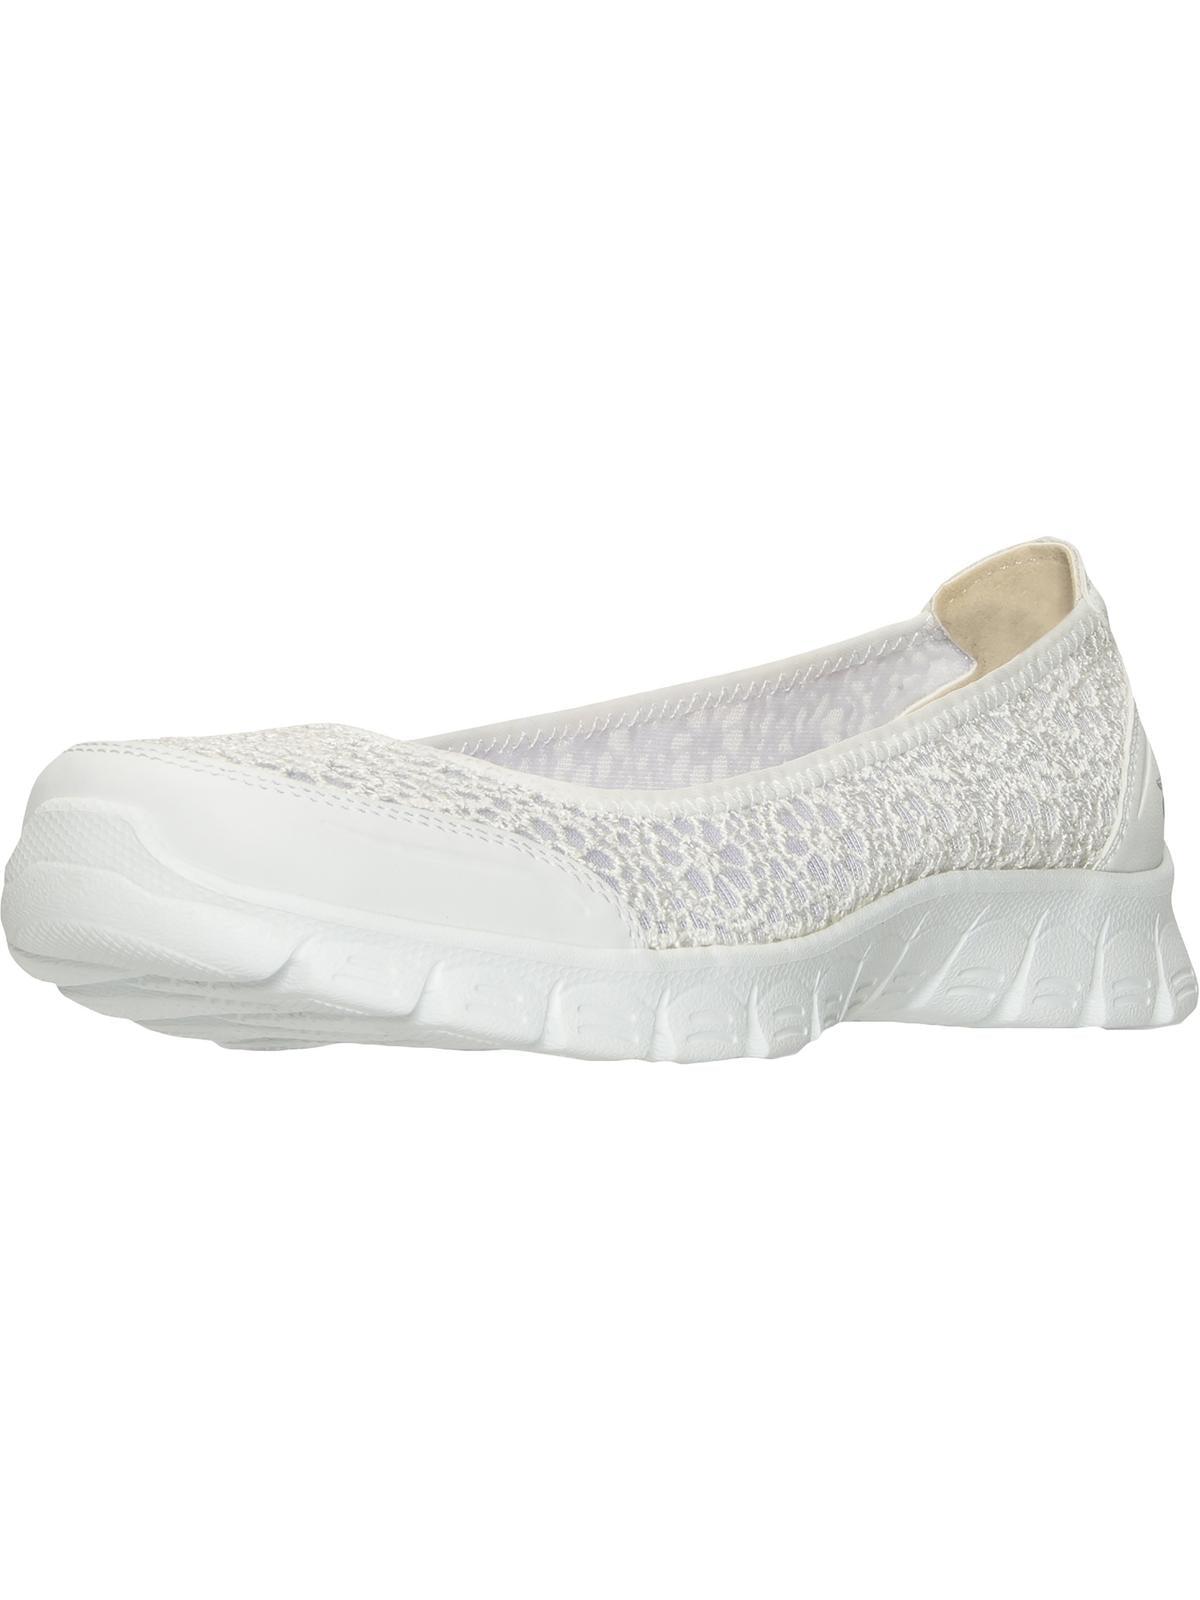 Skechers Majesty Slip On Memory Foam Walking Shoes in White | Lyst